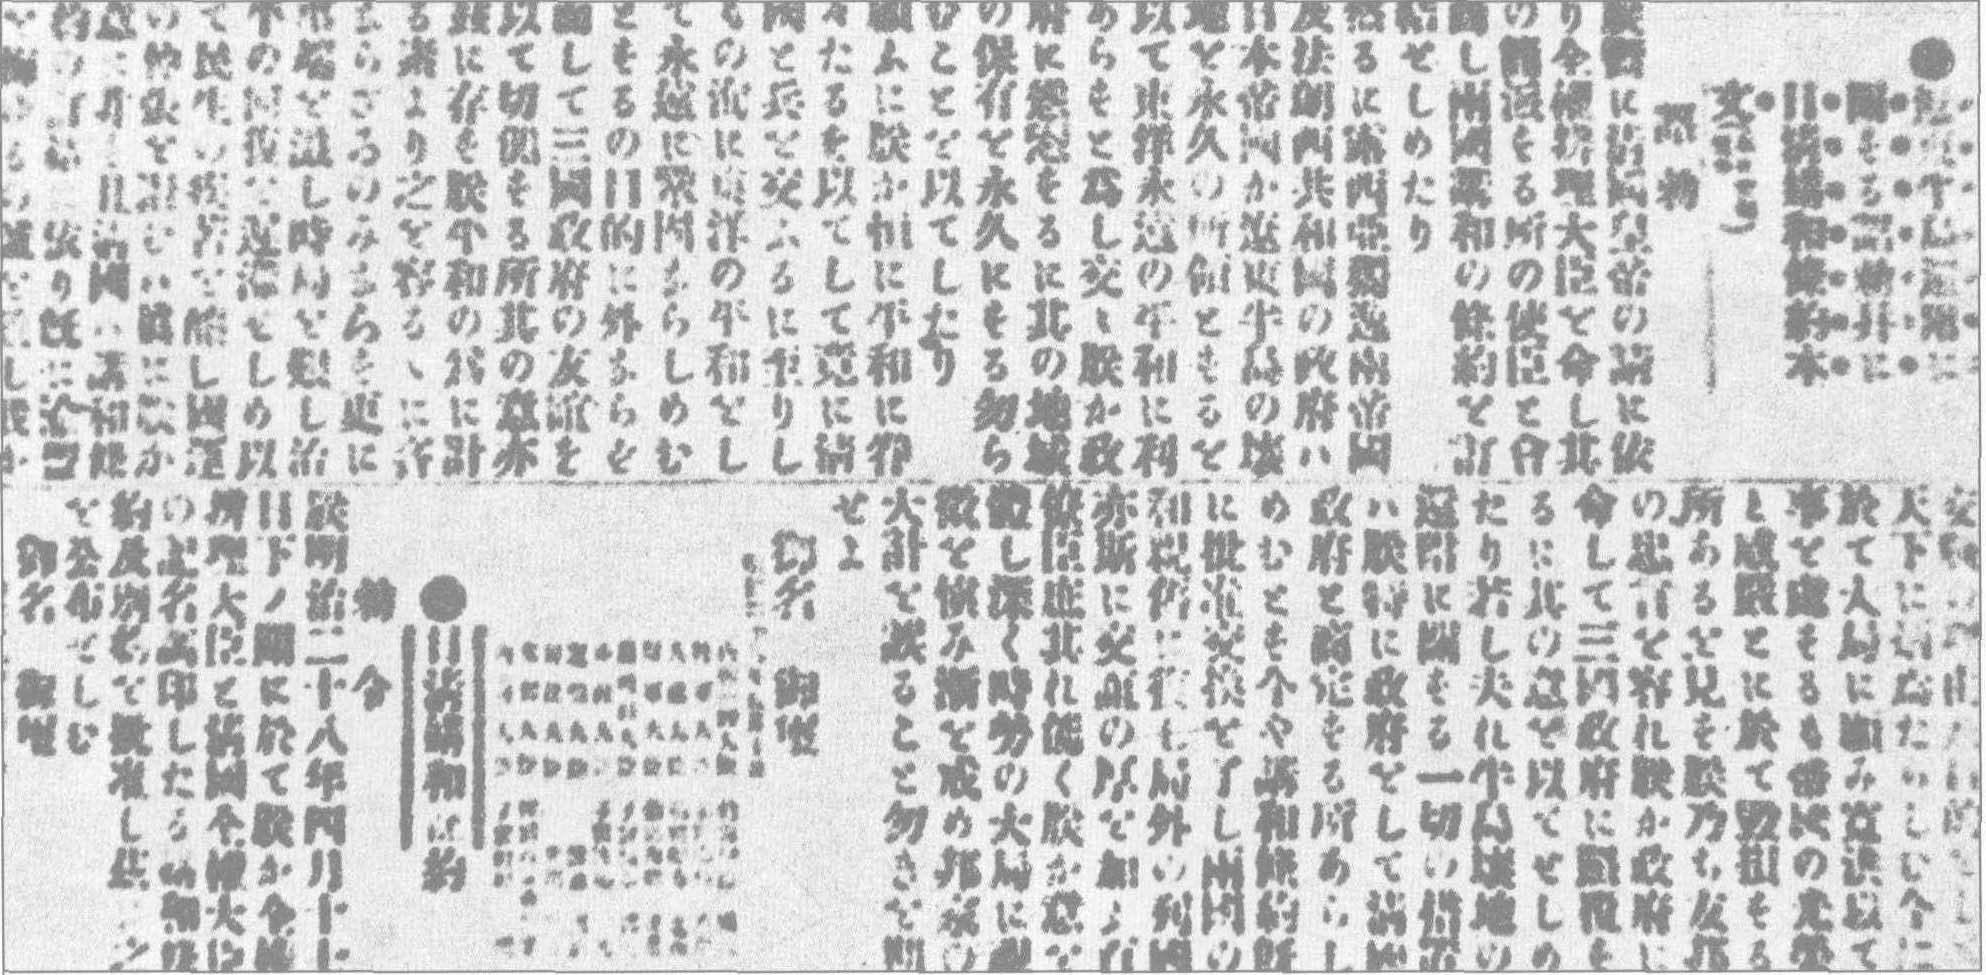 1895年5月13日，日本《东京日日新闻》刊载日本天皇 “归还” 辽东半岛的诏书